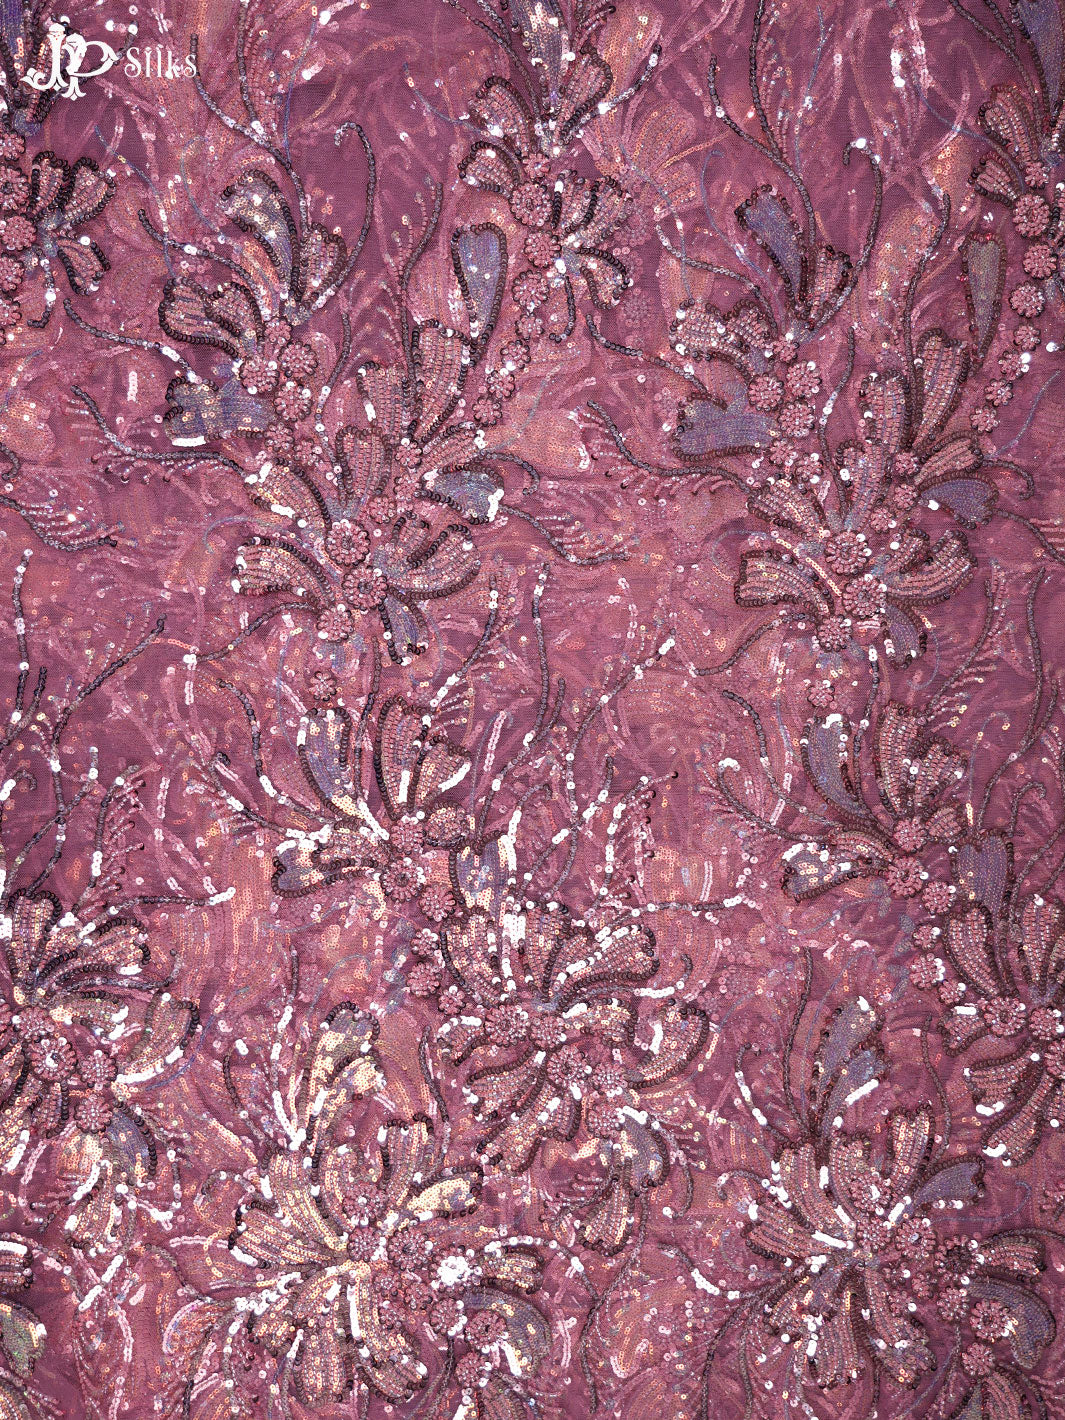 Onion Pink Net Fabric - E4188 - View 3